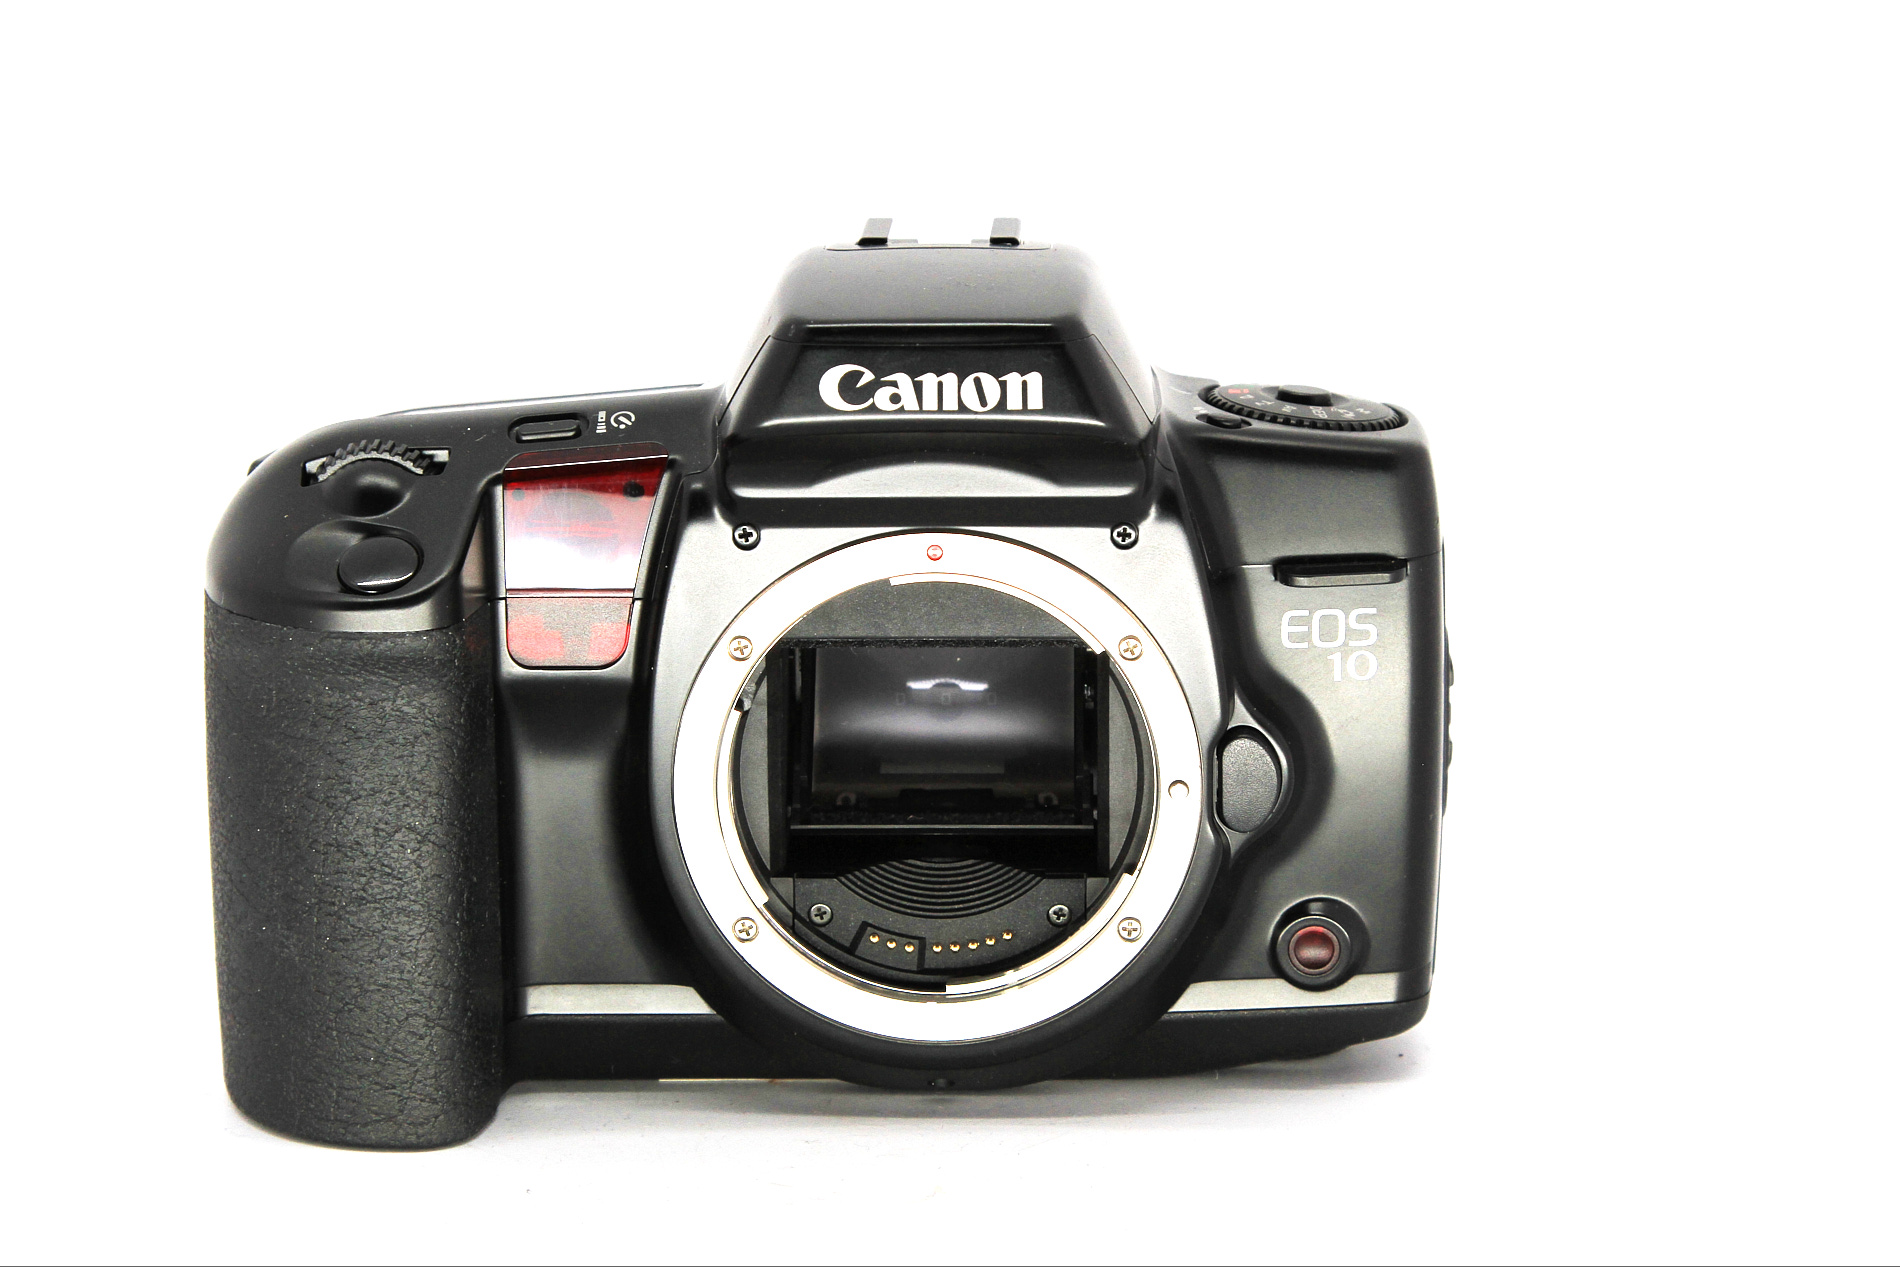 Canon EOS 10 Analog gebraucht Bild 01